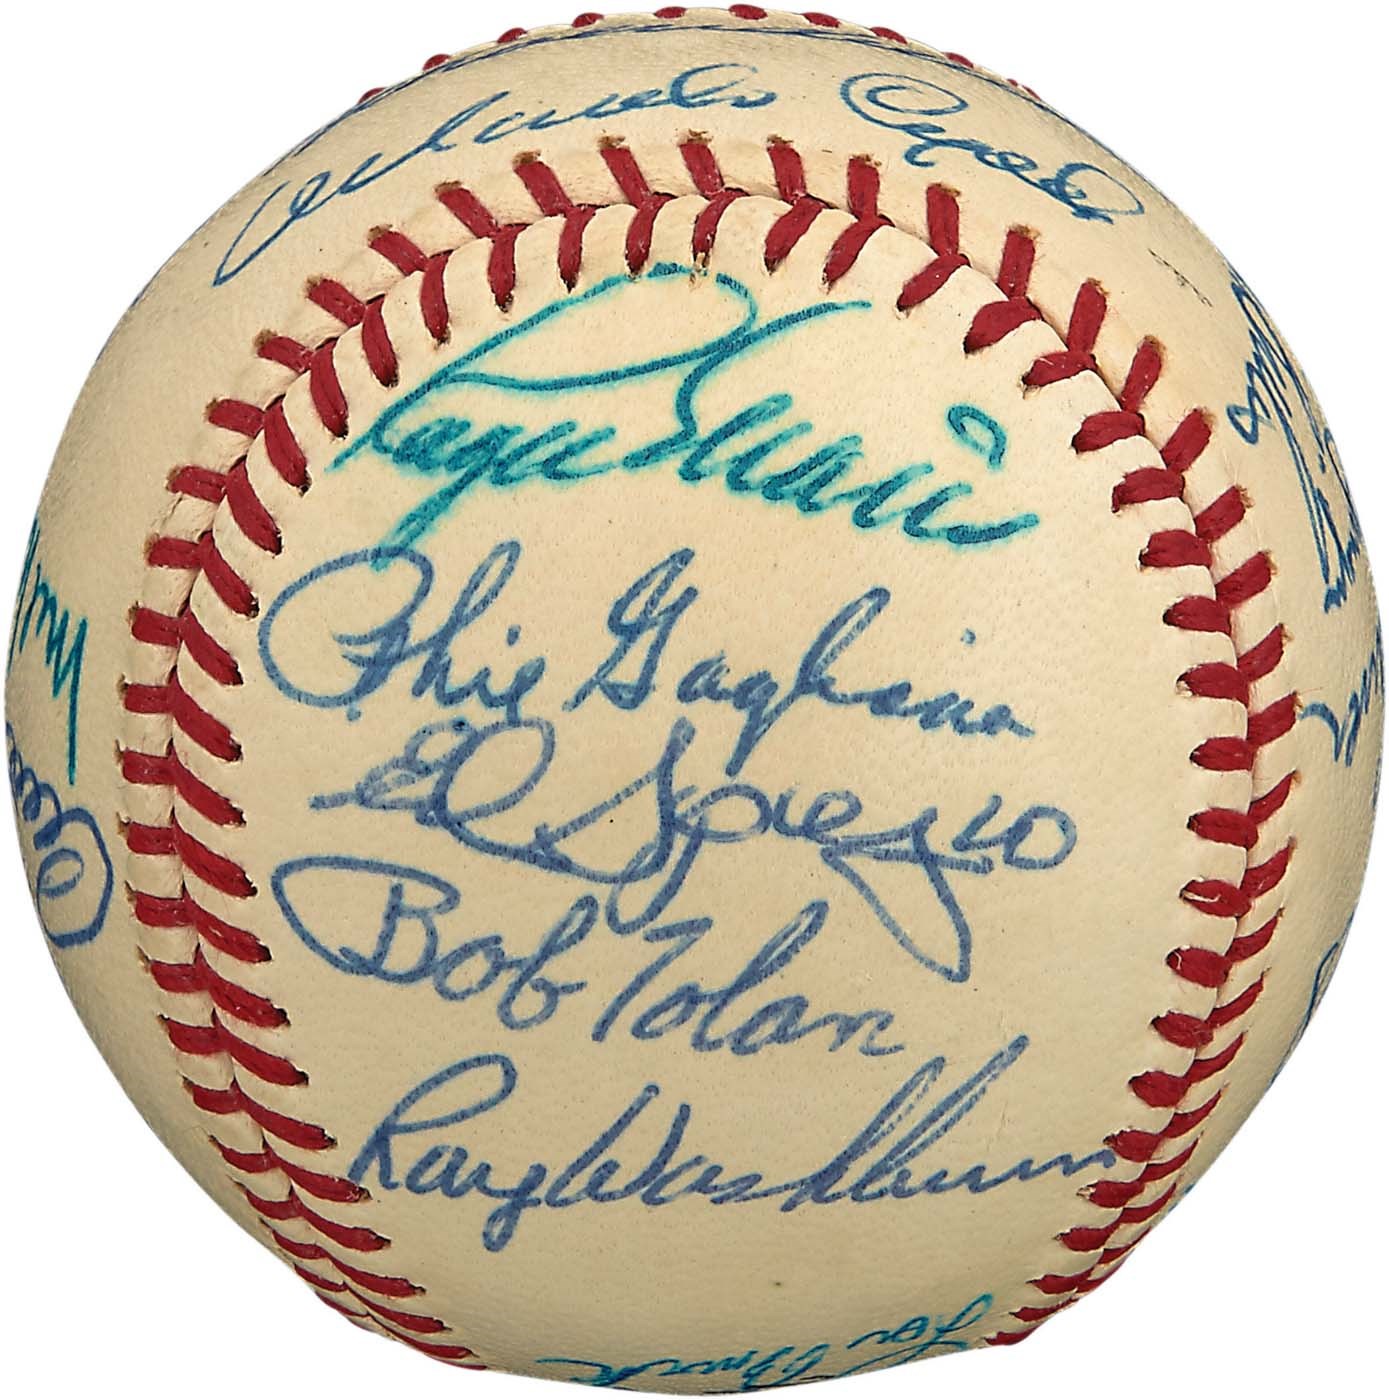 High Grade 1968 St. Louis Cardinals Team-Signed Baseball (PSA MINT 9)